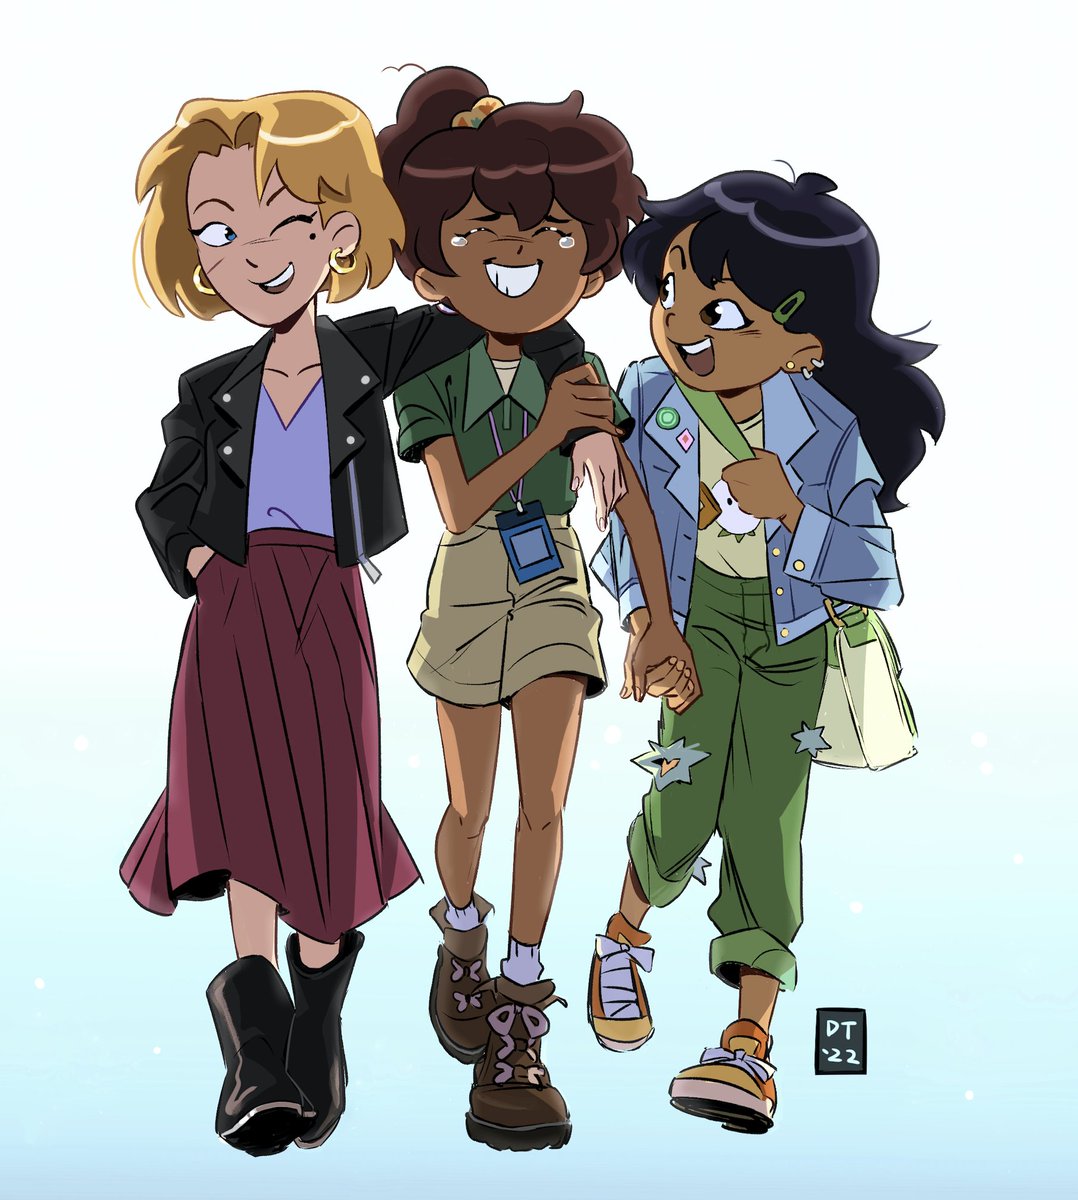 3girls multiple girls dark skin blonde hair jacket dark-skinned female skirt  illustration images